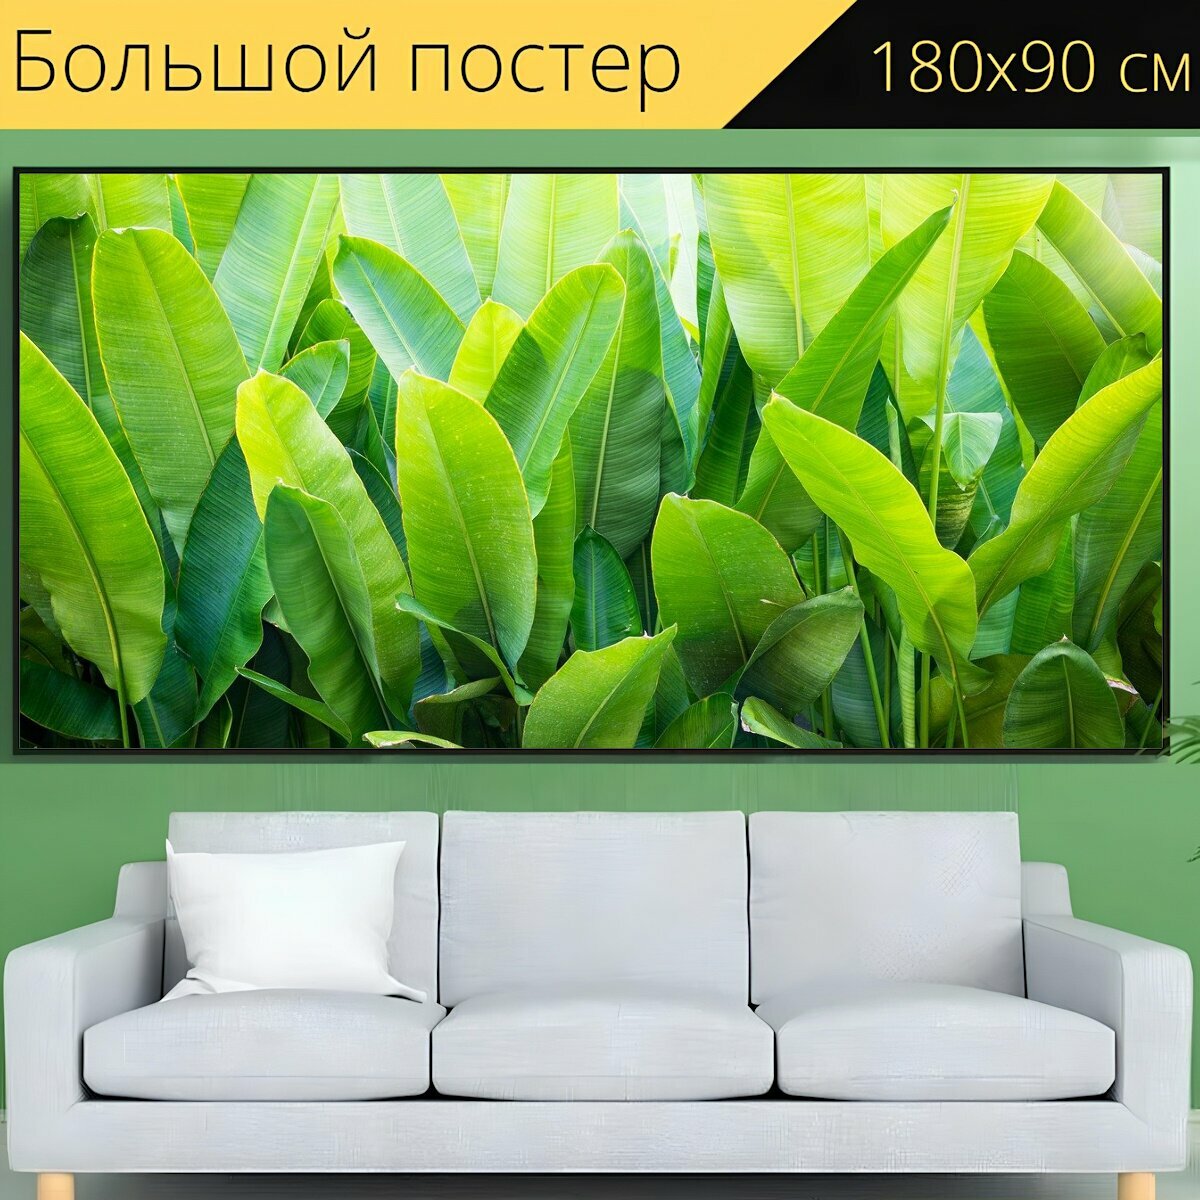 Большой постер "Банан, лист, зеленый" 180 x 90 см. для интерьера